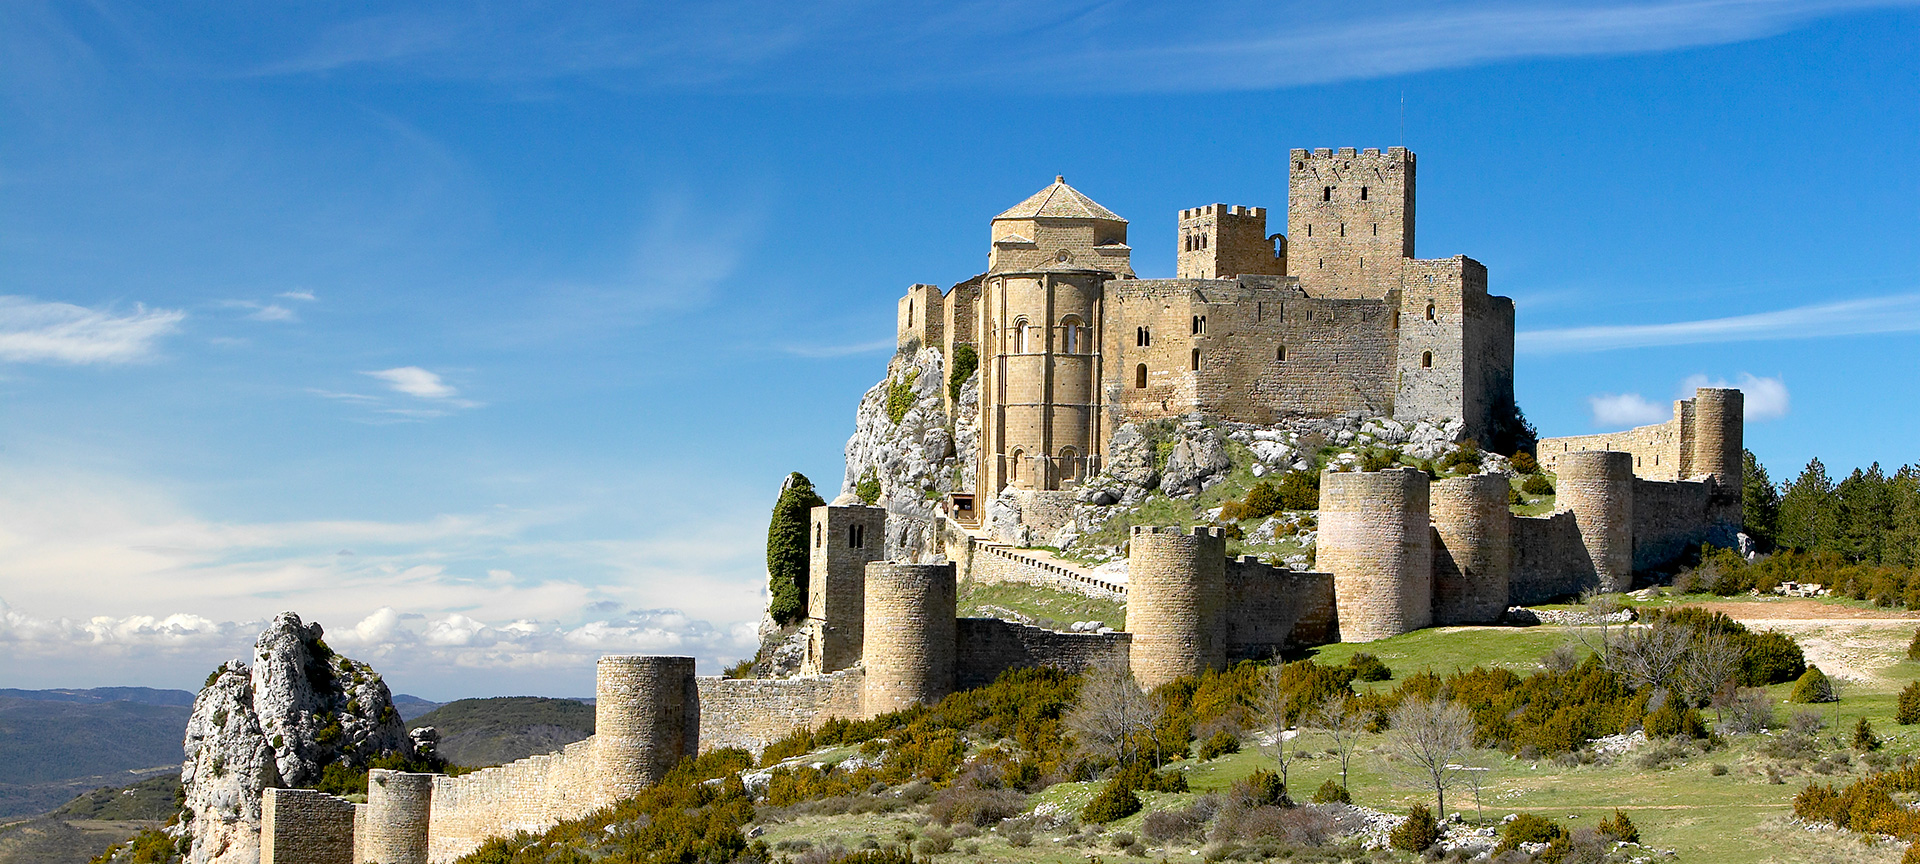 Middeleeuws kasteel op berg tegen blauwe lucht.